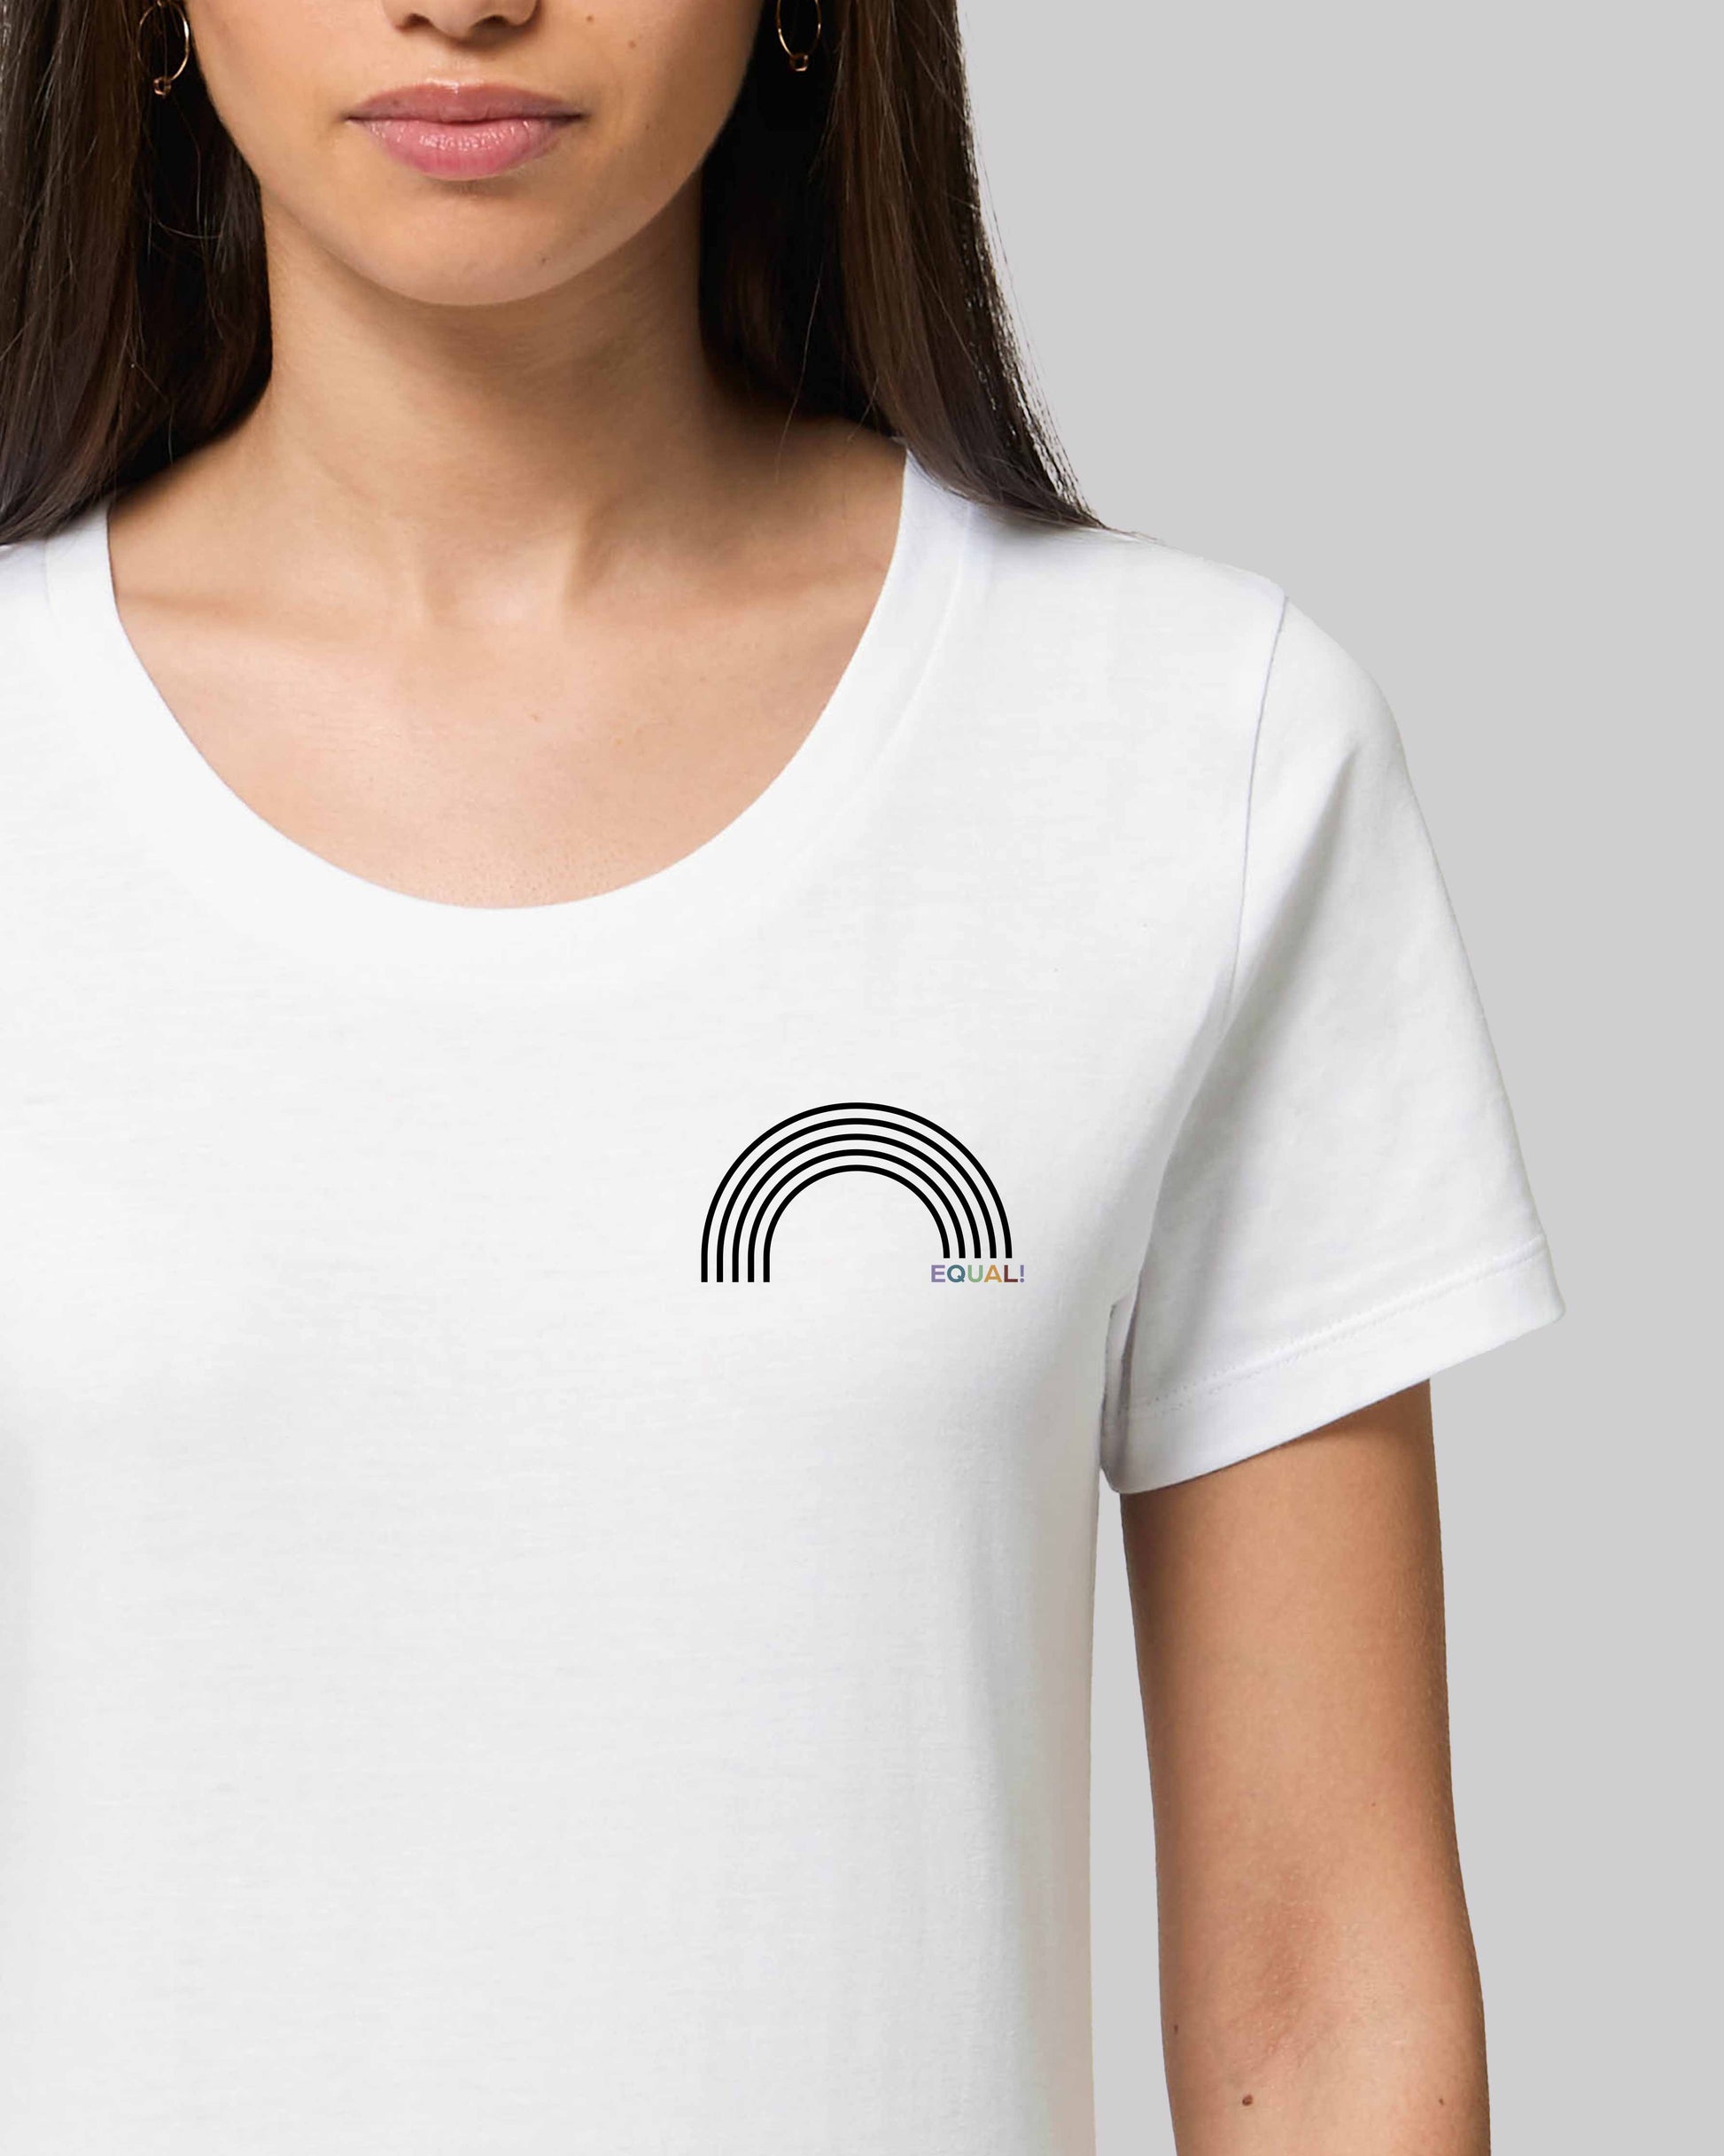 EINHORST® Organic Shirt tailliert in "Weiß" mit dem Motiv "equal Regenbogen" in der Kombination schwarzer Regenbogen mit bunter Schrift, Bild von weiblicher Person mit Shirt